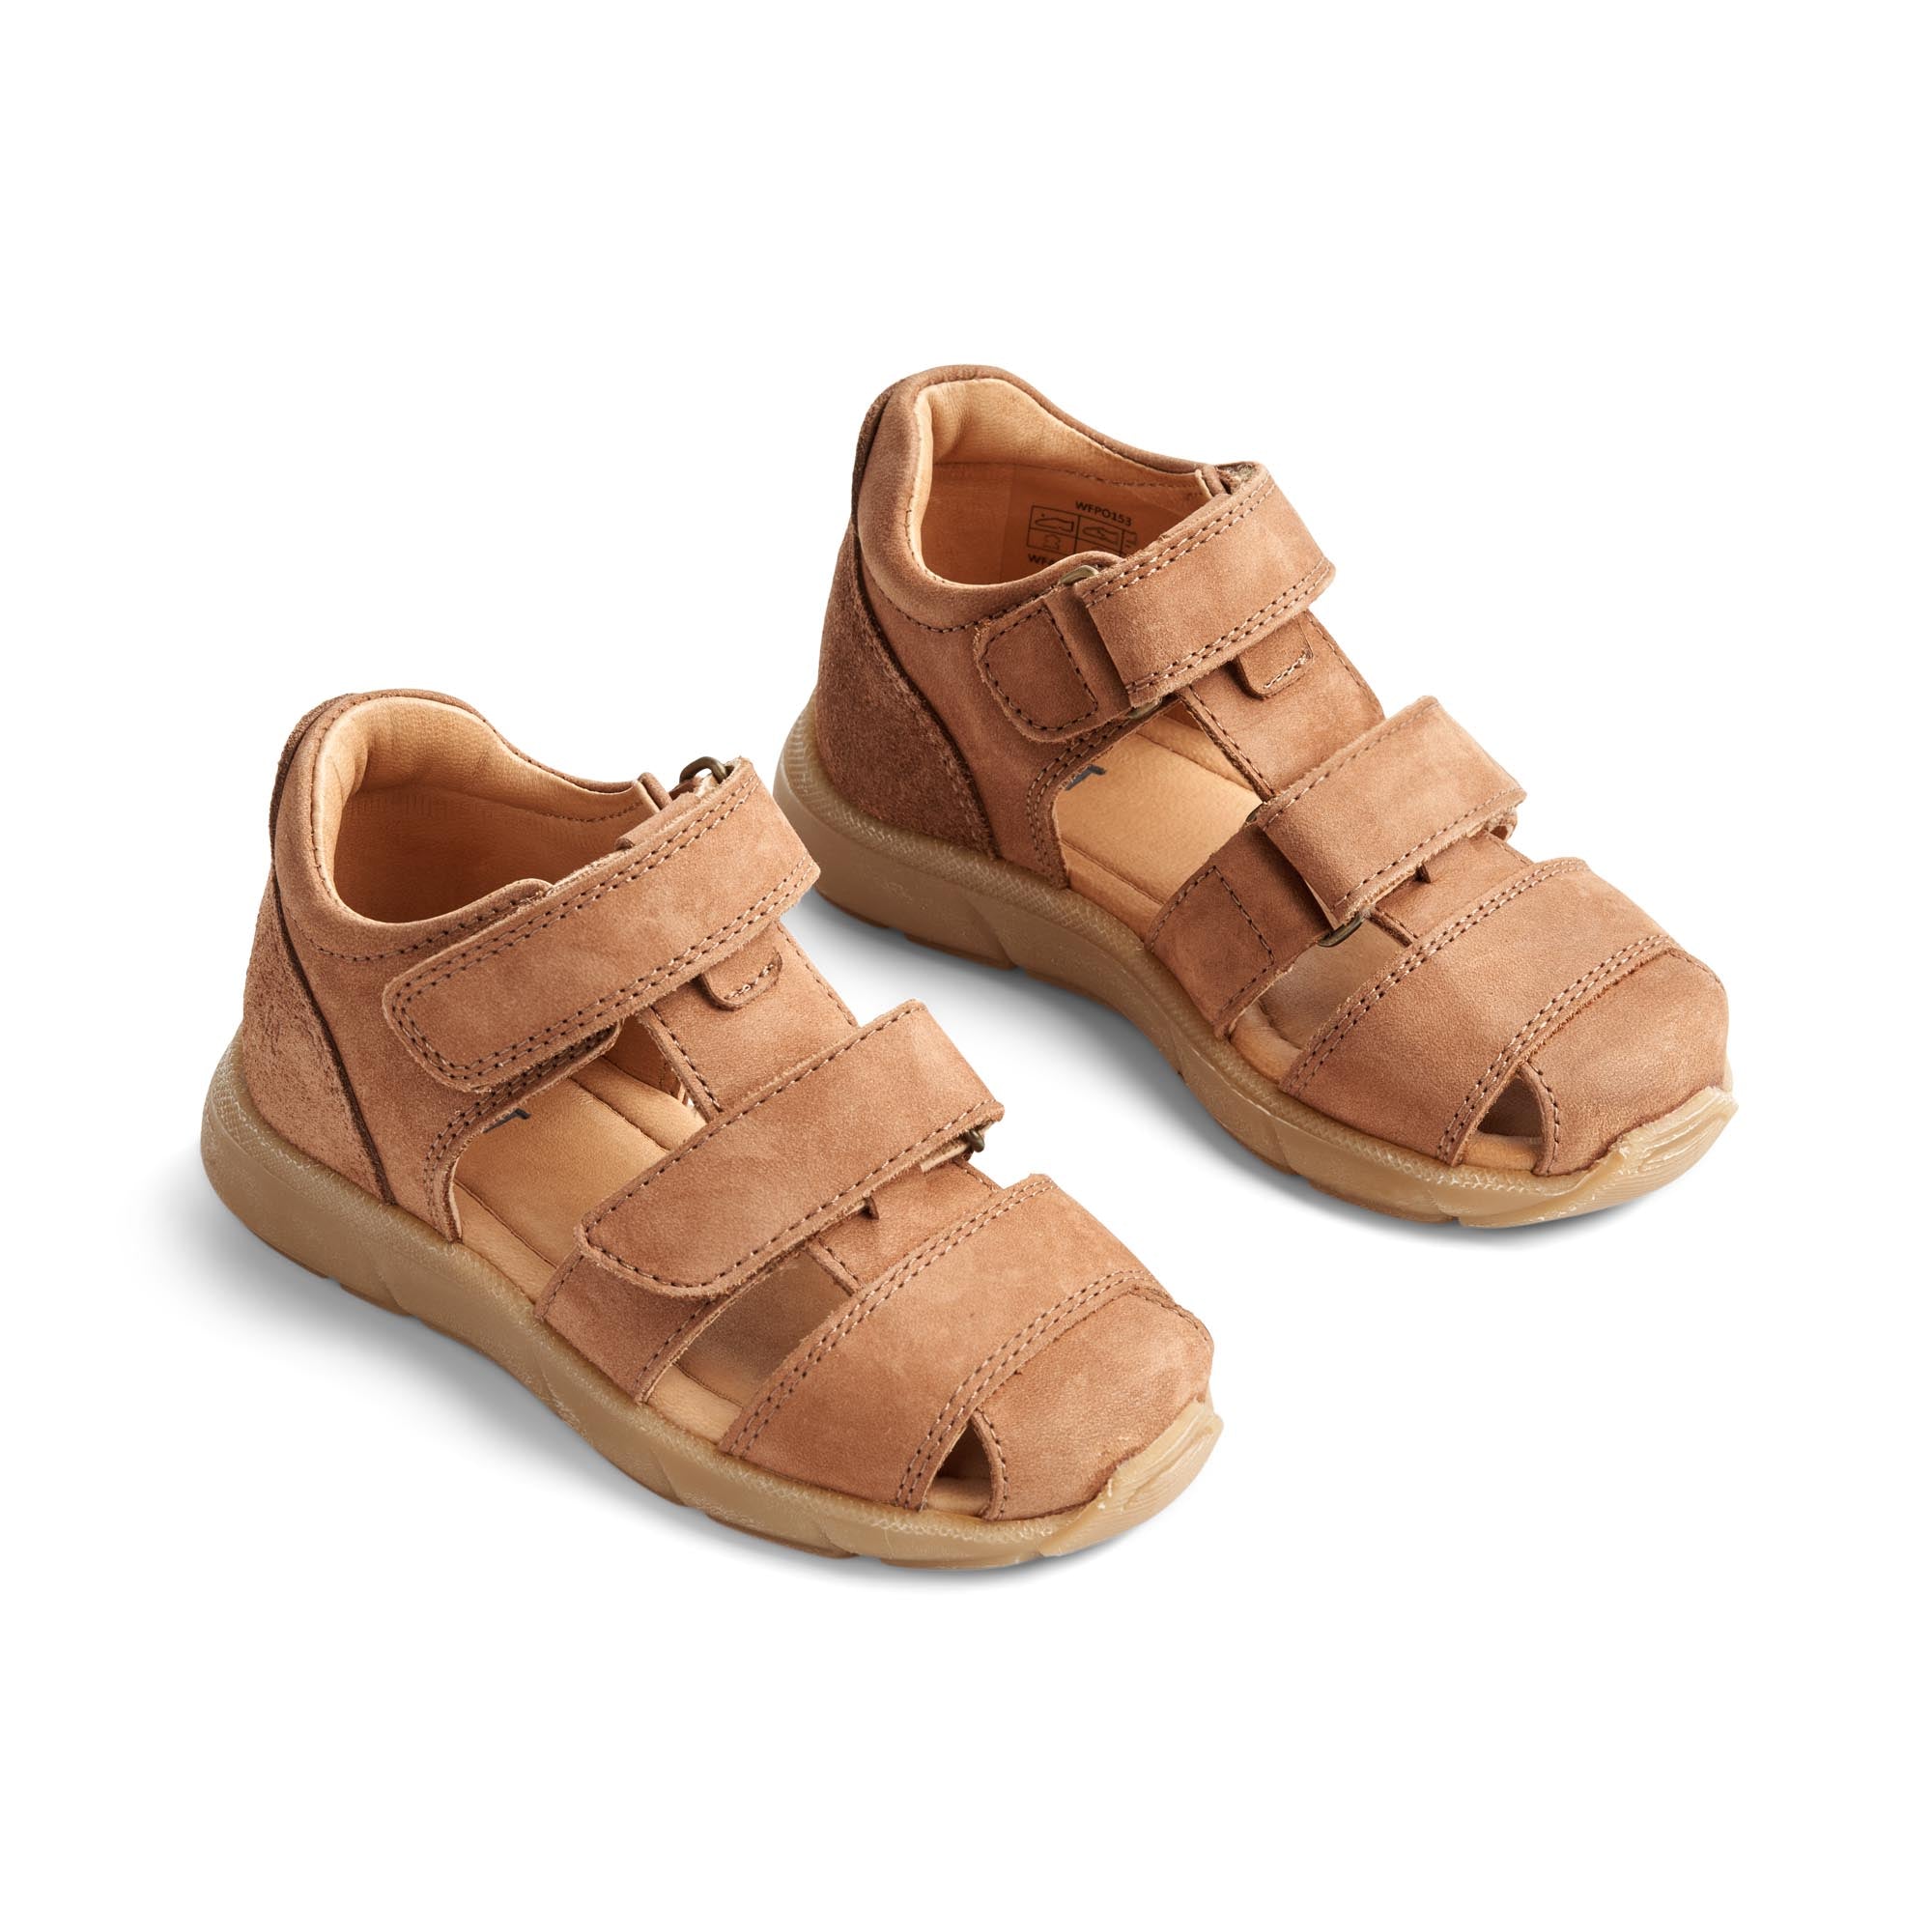 Wheat Footwear - Figo Sandal, WF427h - Cognac